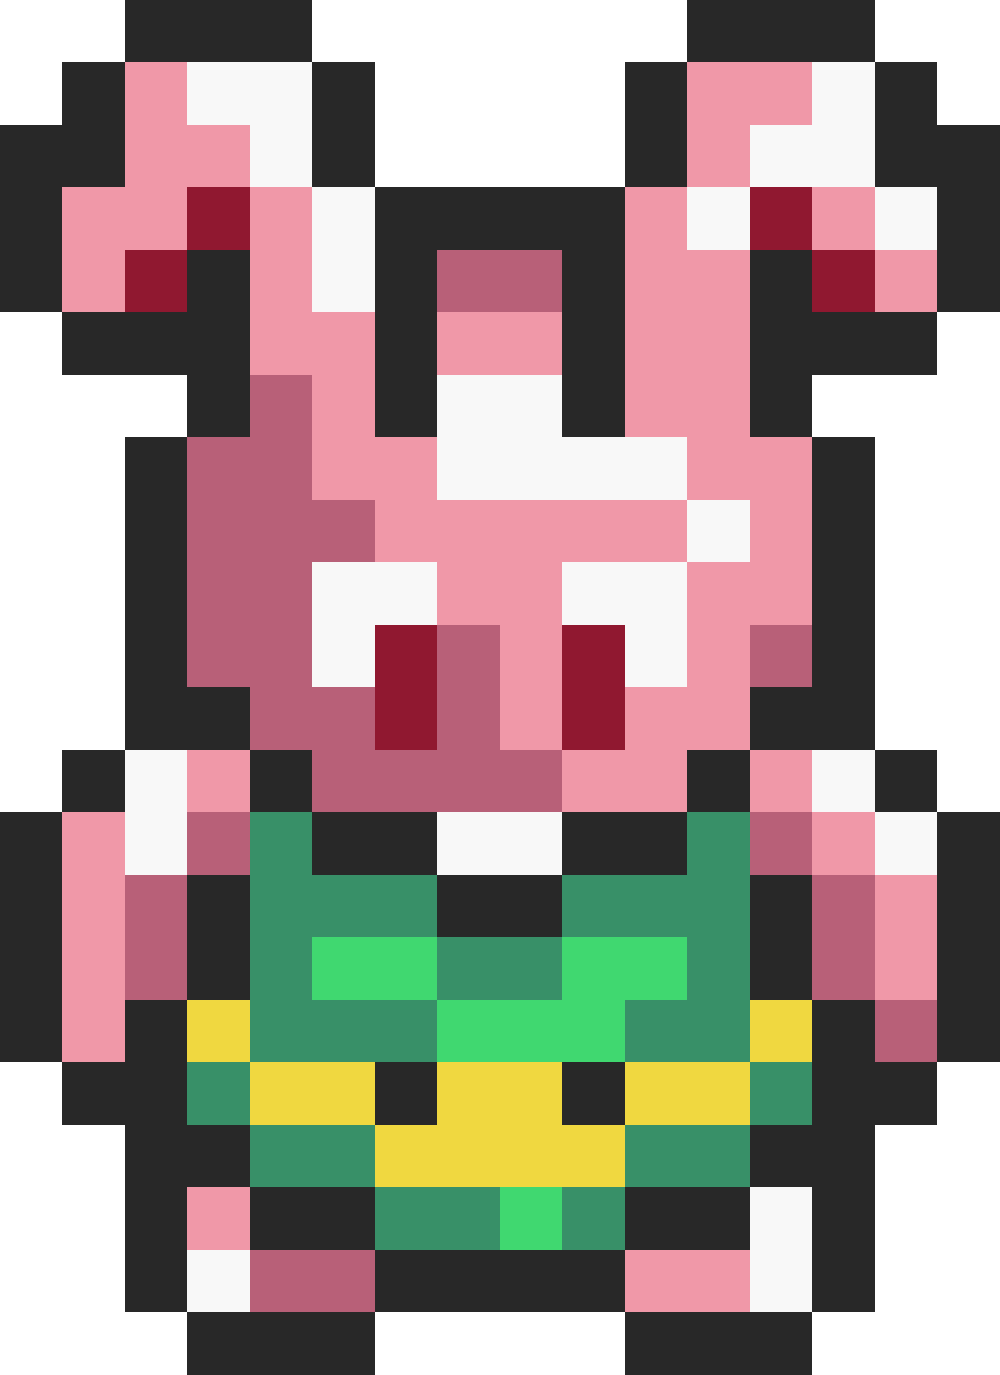 bunny-link-fantendo-game-ideas-more-fandom